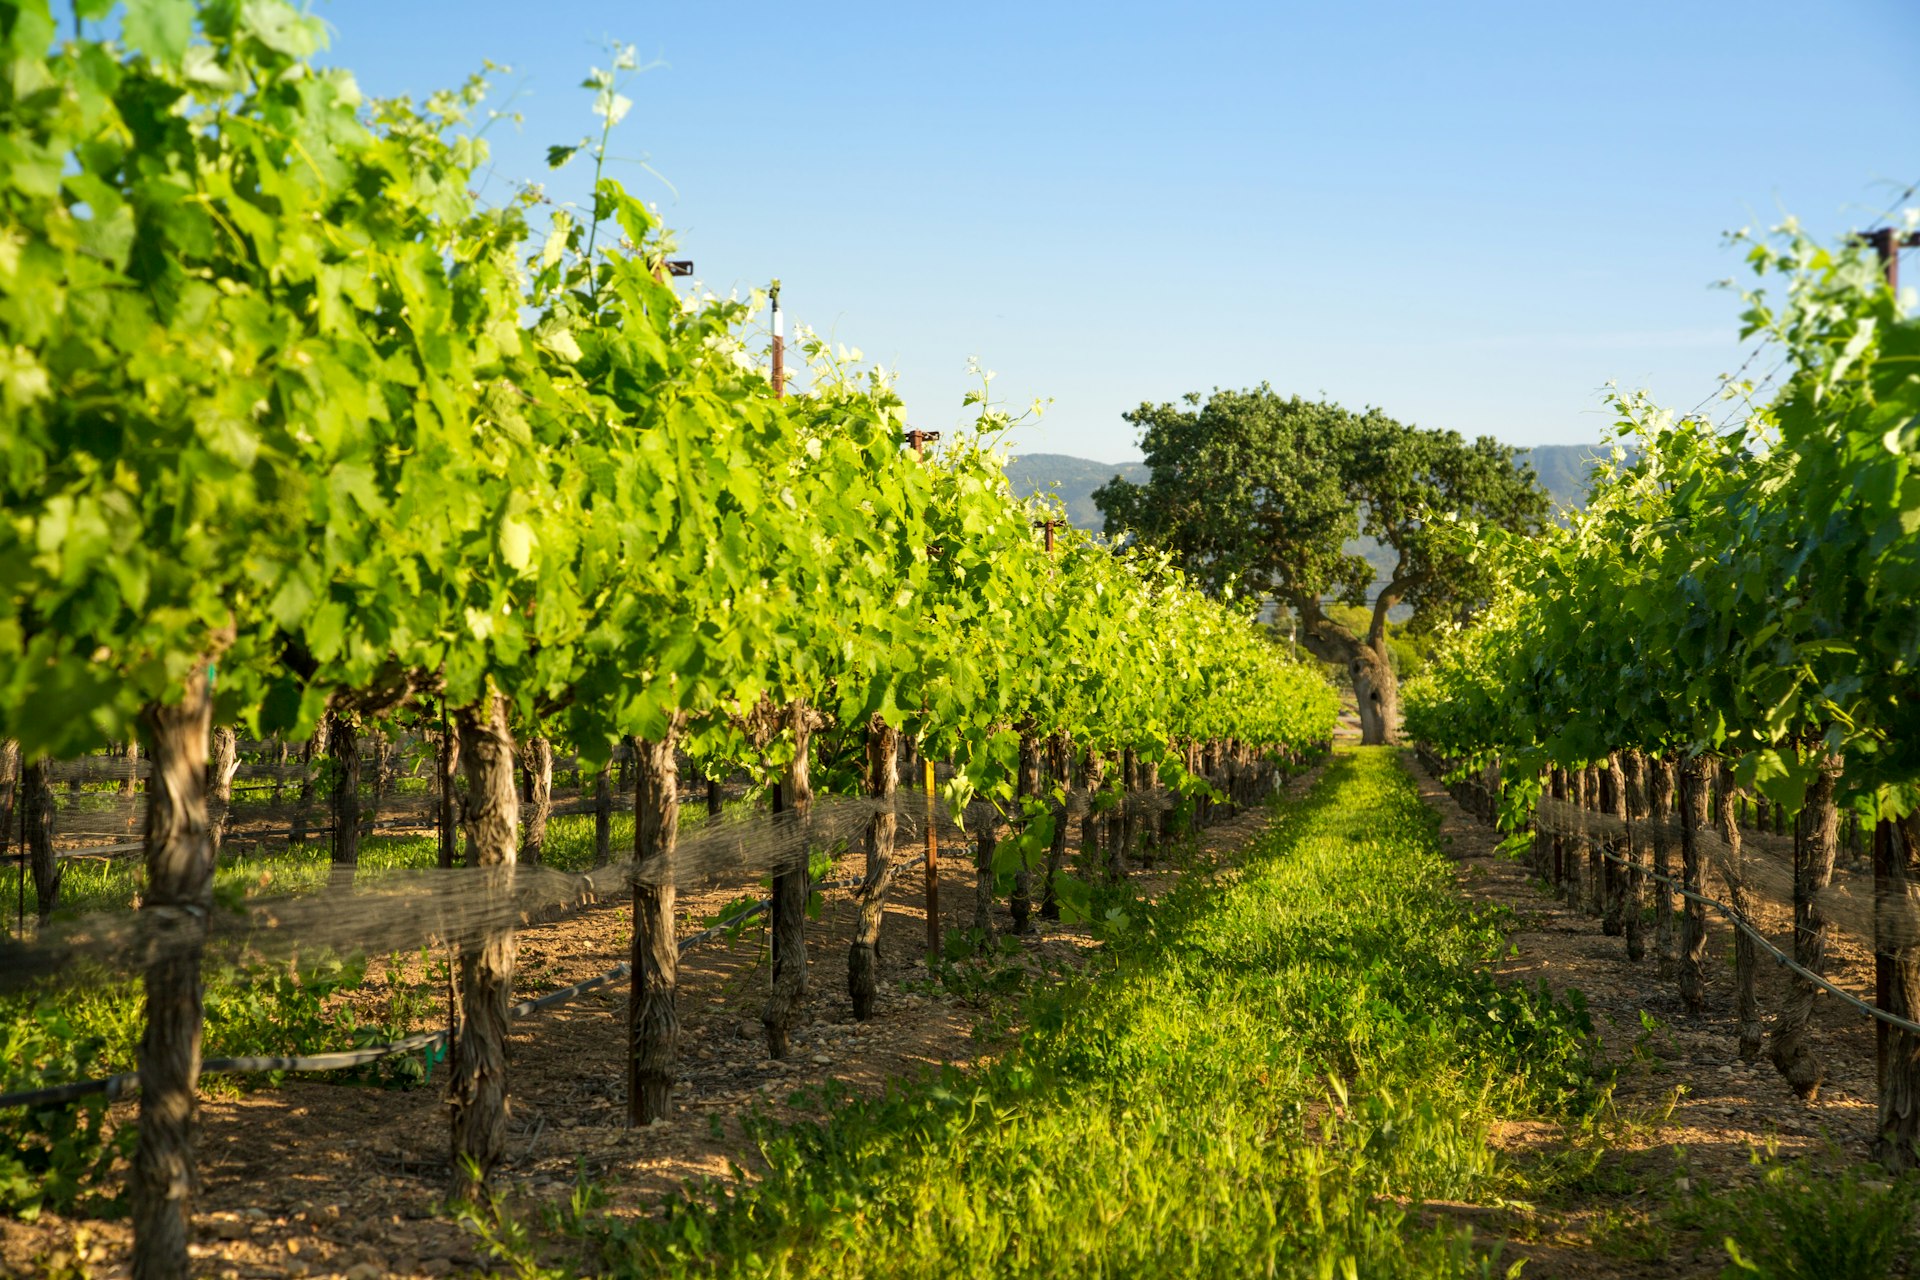 Vineyard with oak trees in Santa Barbara, CA